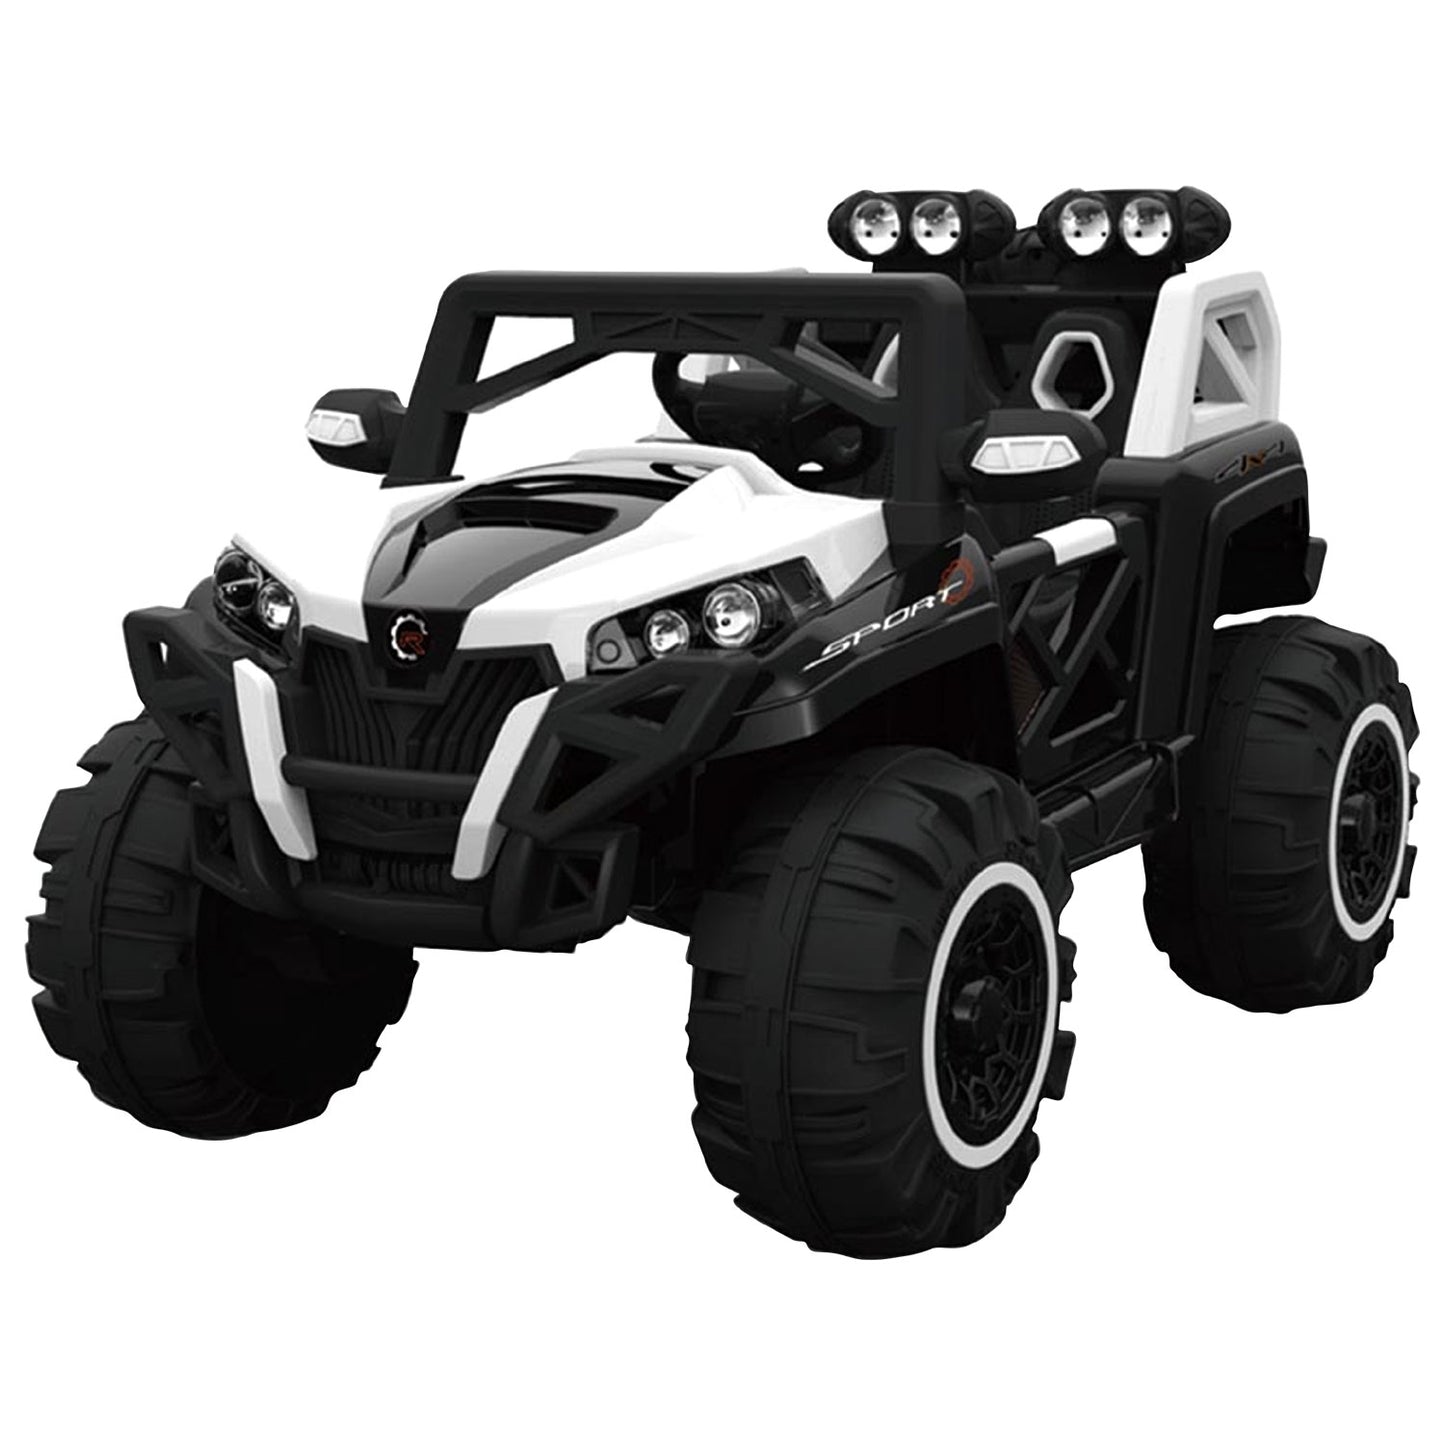 Recon 250 ATV